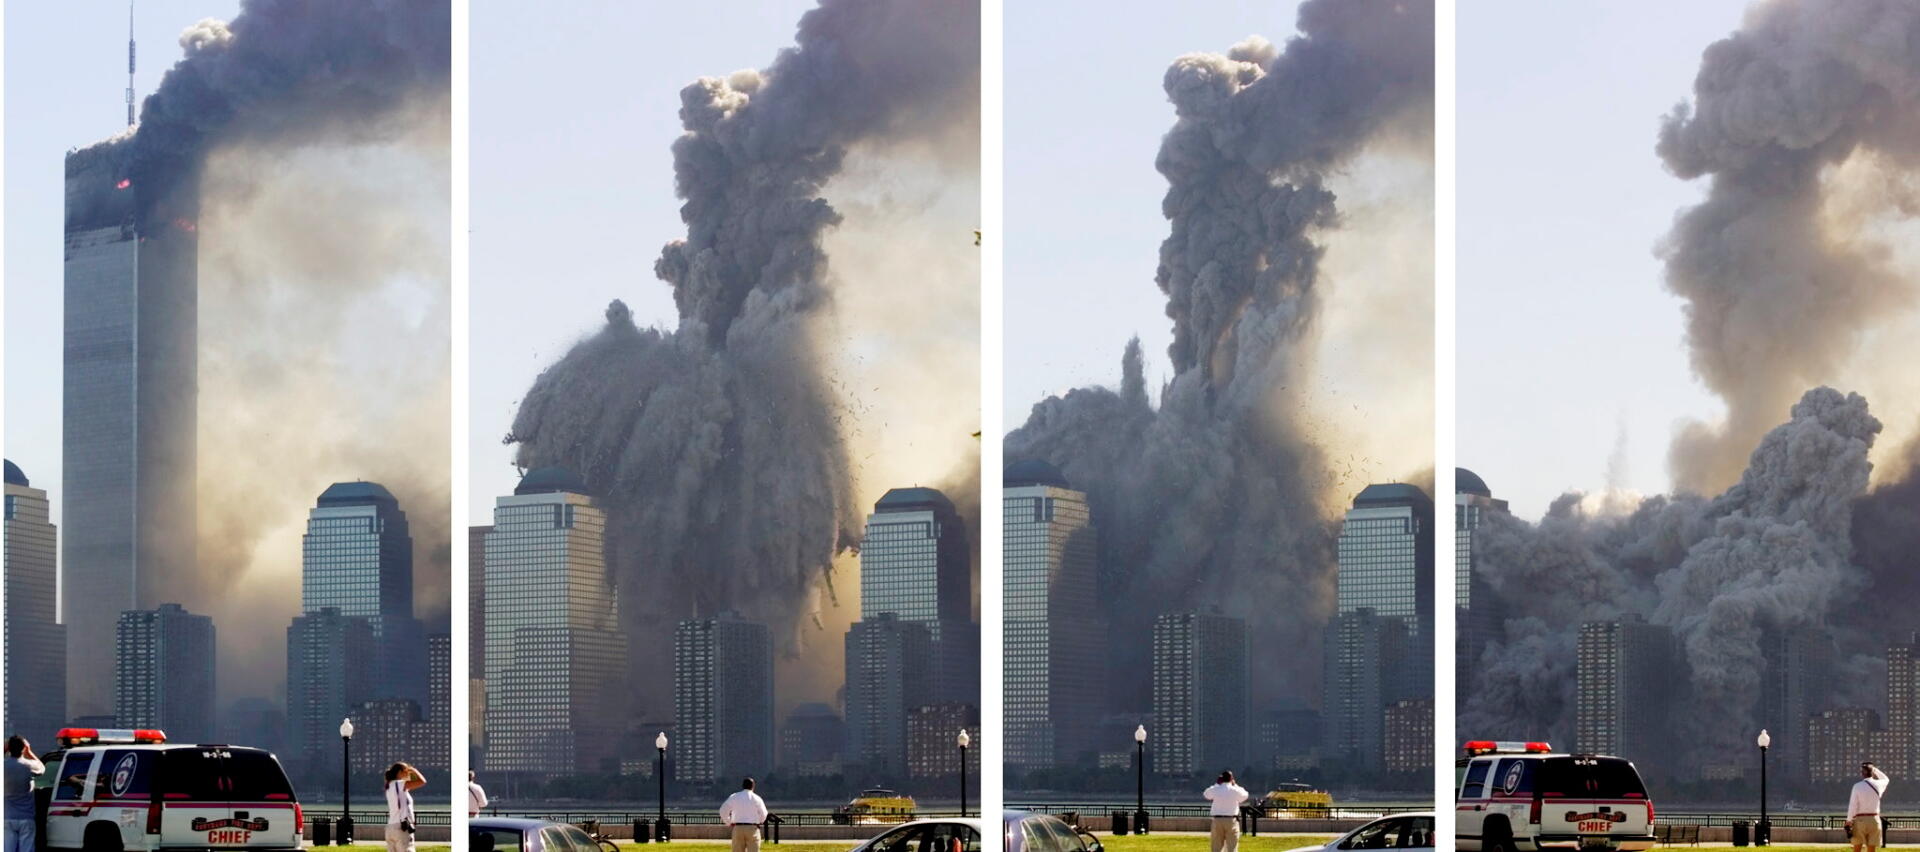 L’effondrement à la verticale des tours jumelles, censées résister à l’impact d’un avion, a été interprété par les tenants d’un complot interne comme la preuve qu’elles avaient été plastiquées.